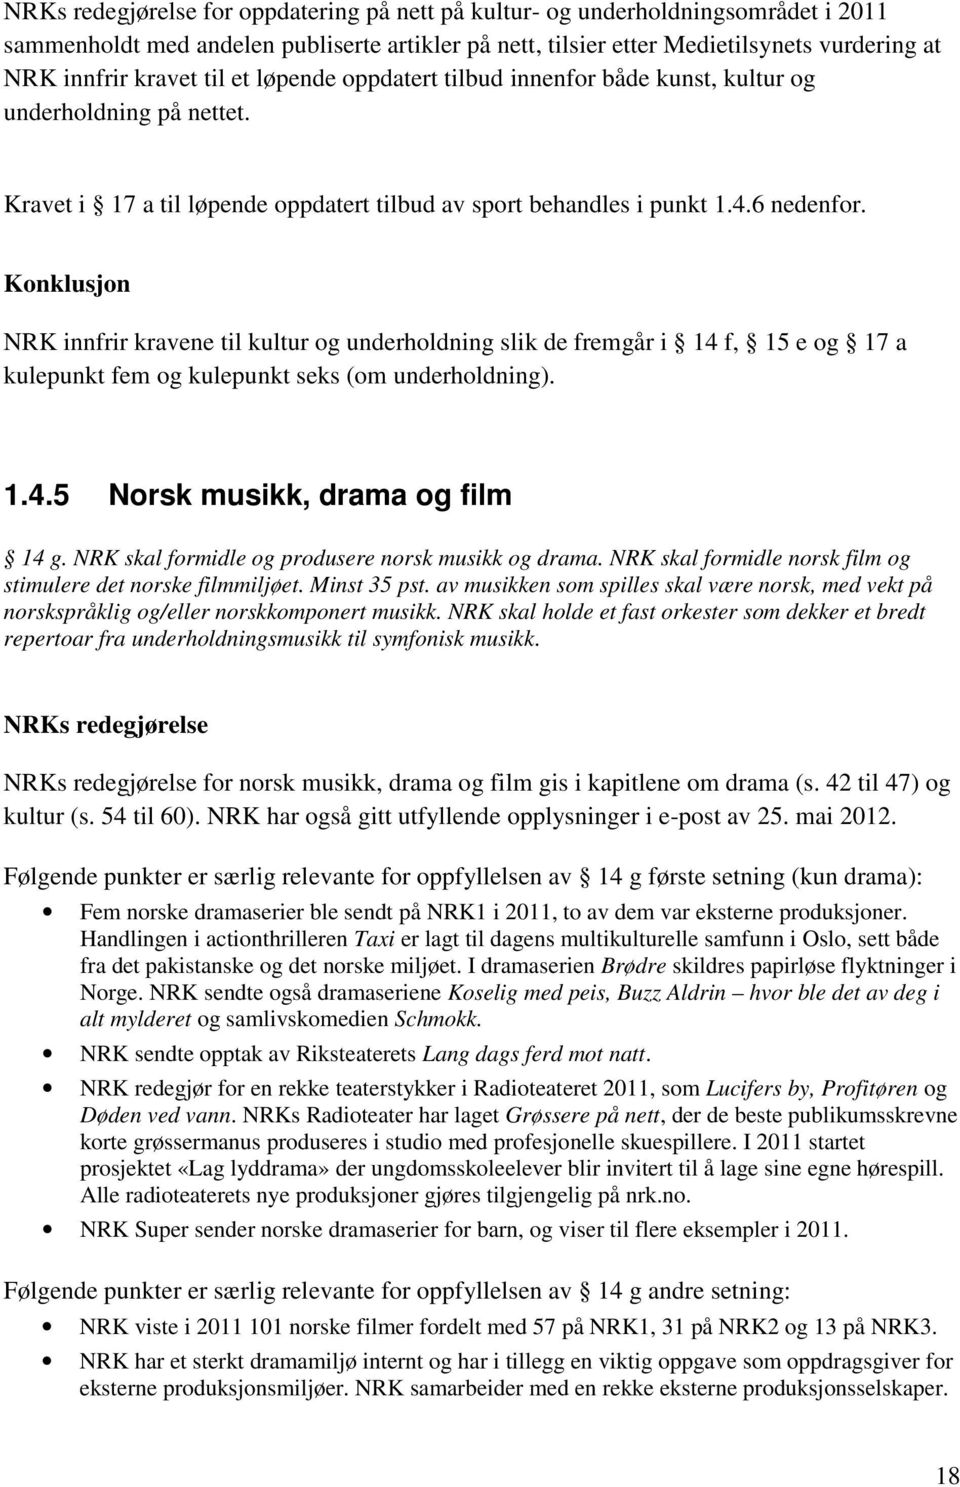 Konklusjon NRK innfrir kravene til kultur og underholdning slik de fremgår i 14 f, 15 e og 17 a kulepunkt fem og kulepunkt seks (om underholdning). 1.4.5 Norsk musikk, drama og film 14 g.